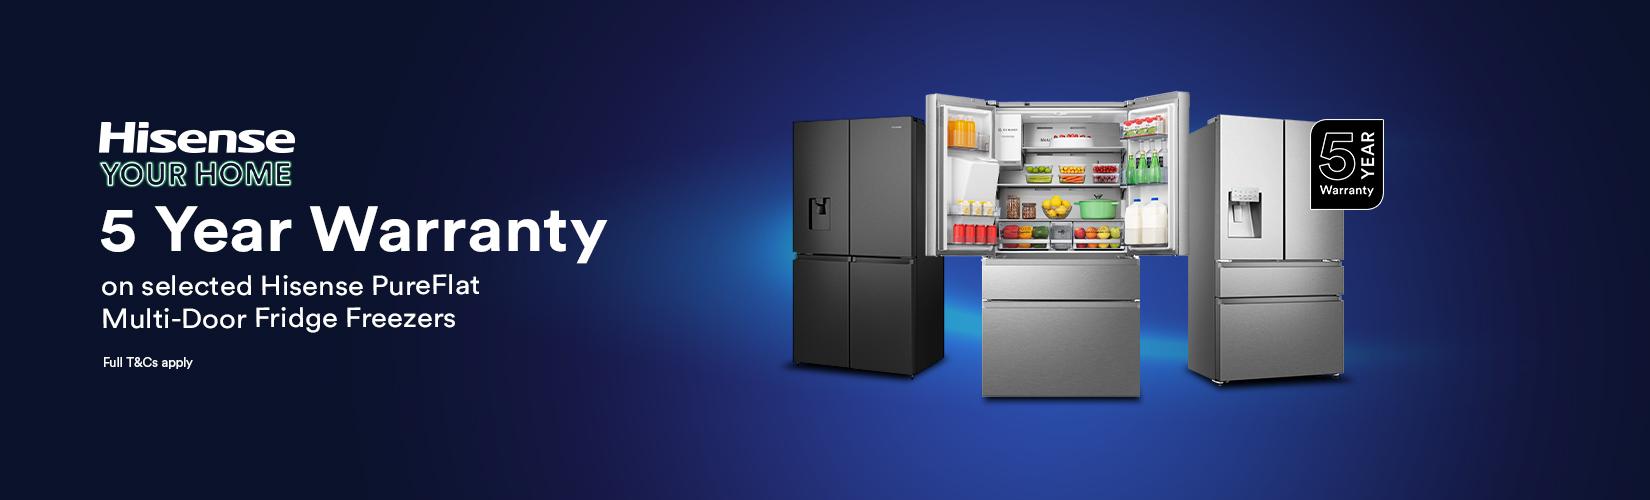 Hisense your home. 5 year warranty on selected Hisense PureFlat multi-door fridge freezers.